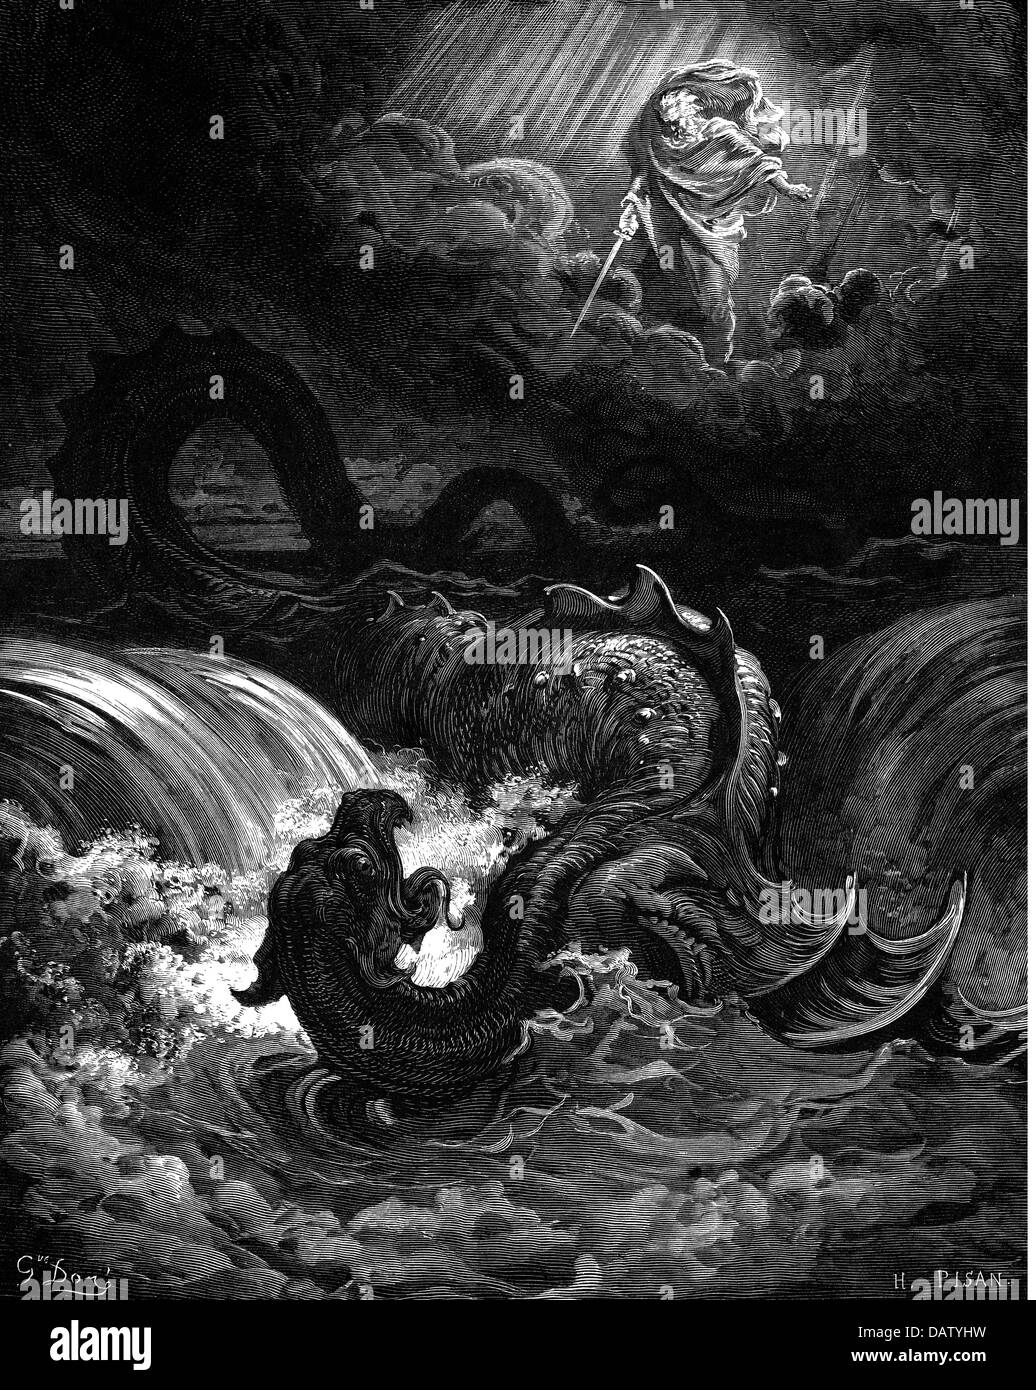 La religion, scènes bibliques, 'Destruction de Leviathan', gravure sur bois de la Bible par Gustave Doré, 1866, l'artiste n'a pas d'auteur pour être effacé Banque D'Images